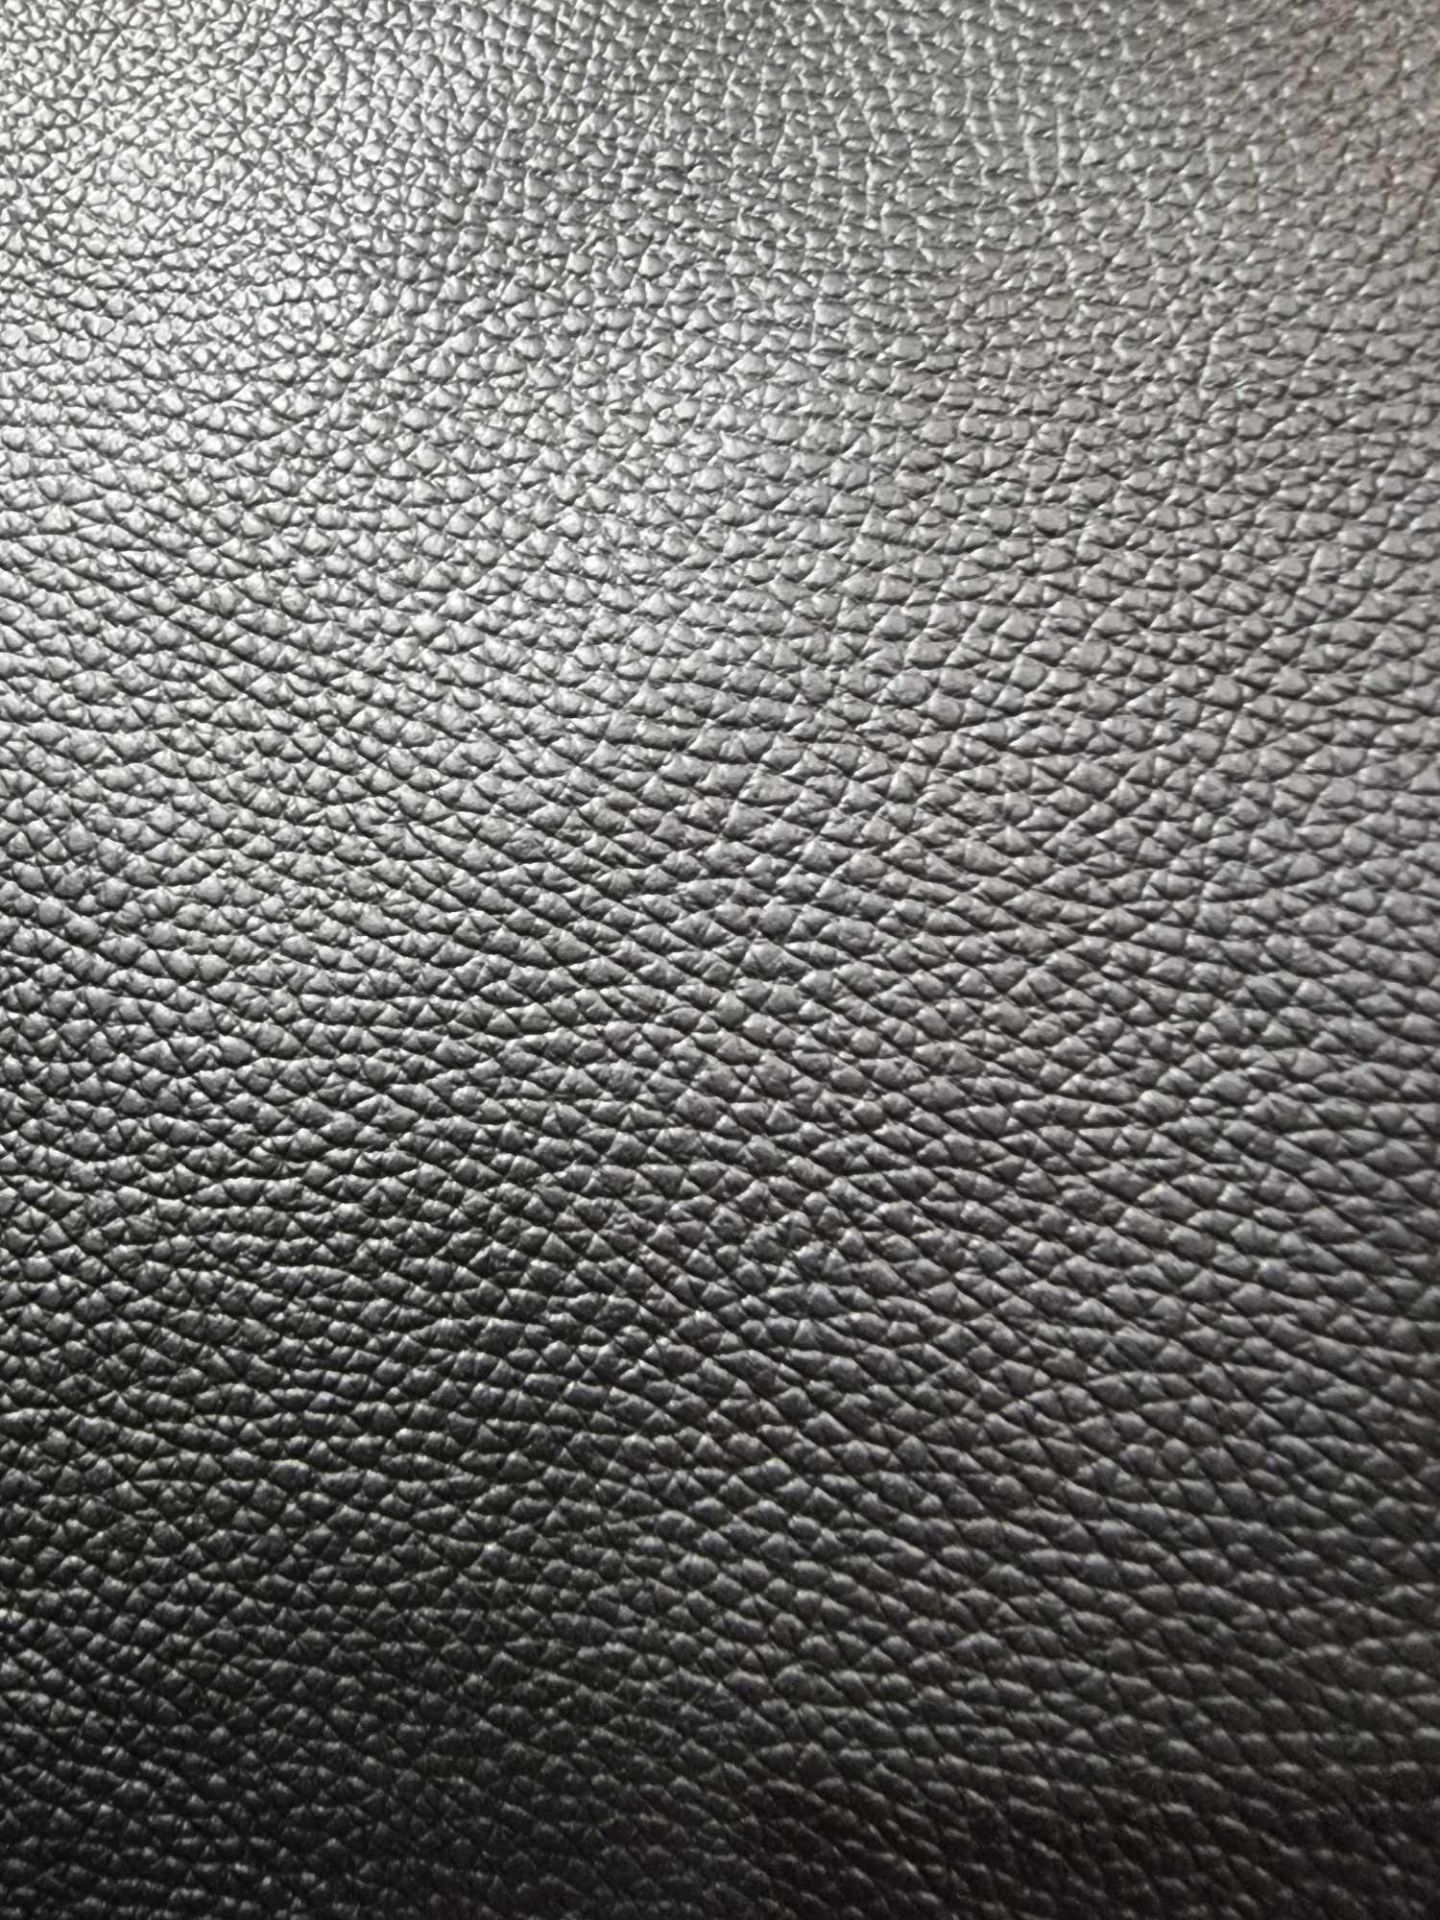 Duresta Midnight Silver Leather Hide approximately 2 4M2 2 x 1 2cm ( Hide No,254) - Bild 2 aus 2